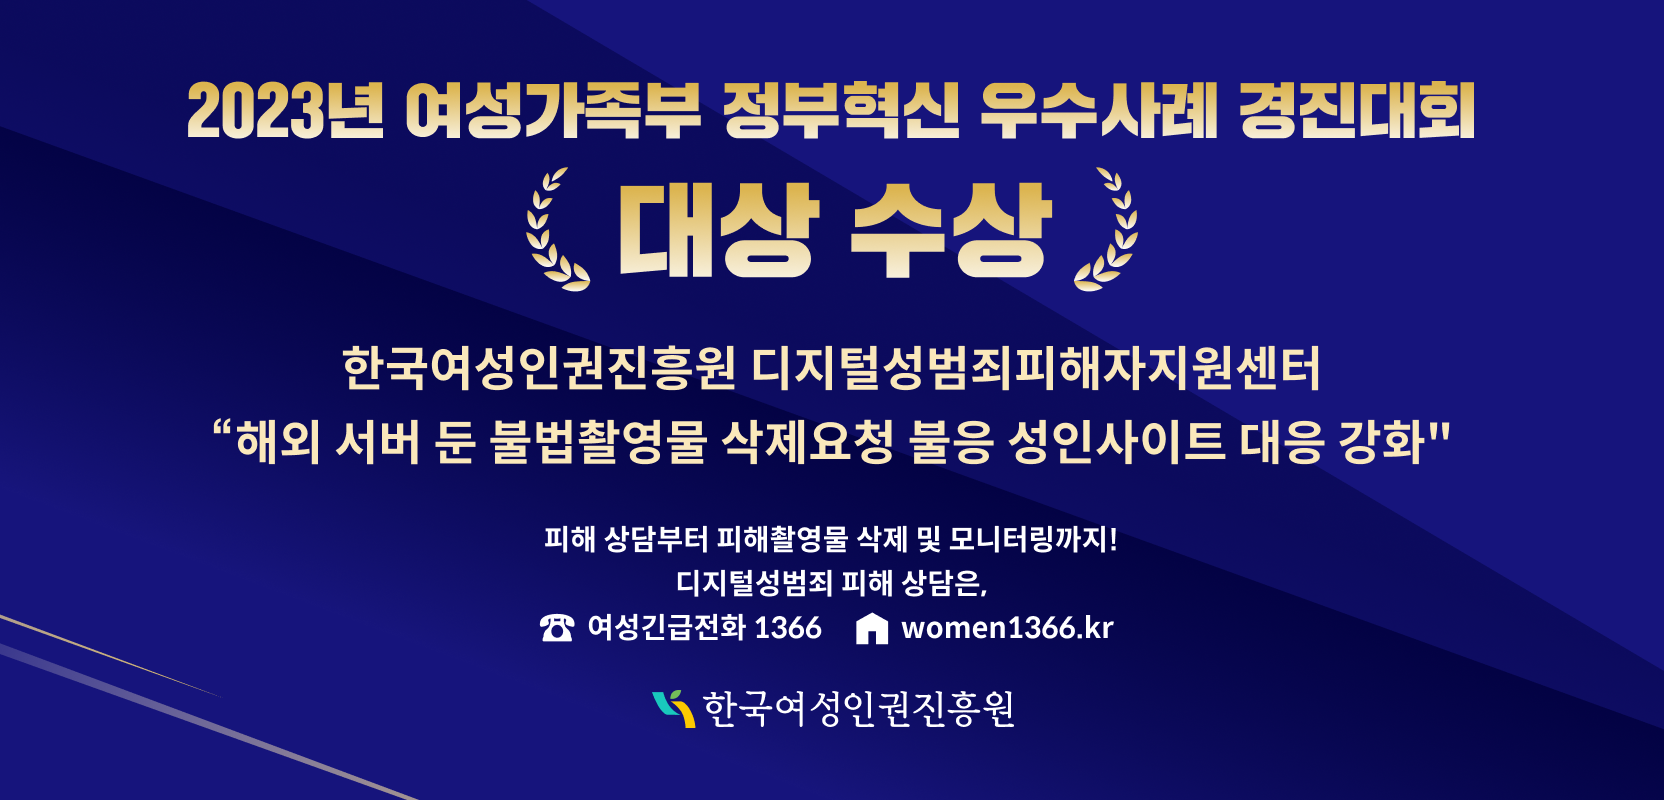 2023년 여성가족부 정부혁신 우수사례 경진대회 디성센터 대상 수상